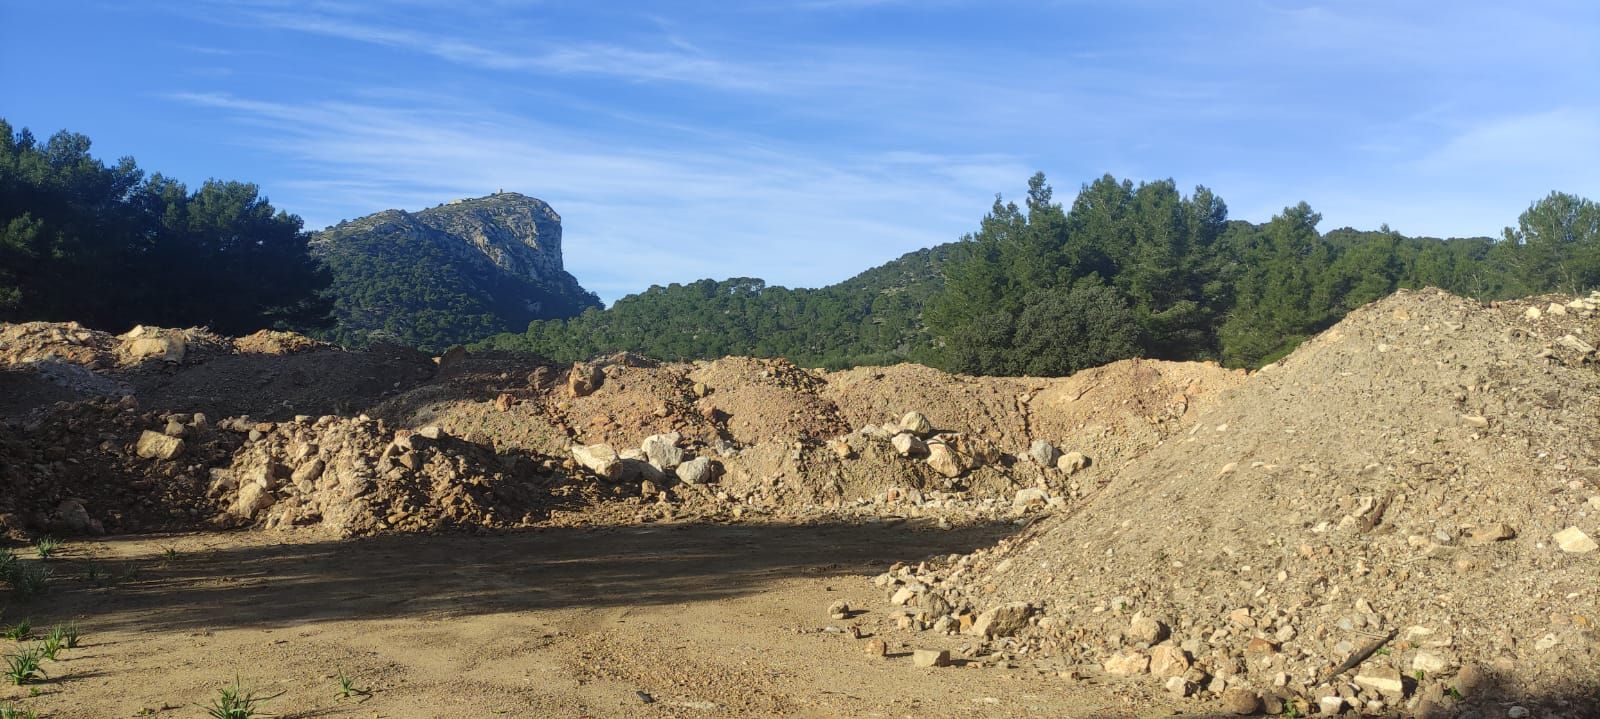 Escombros Formentor